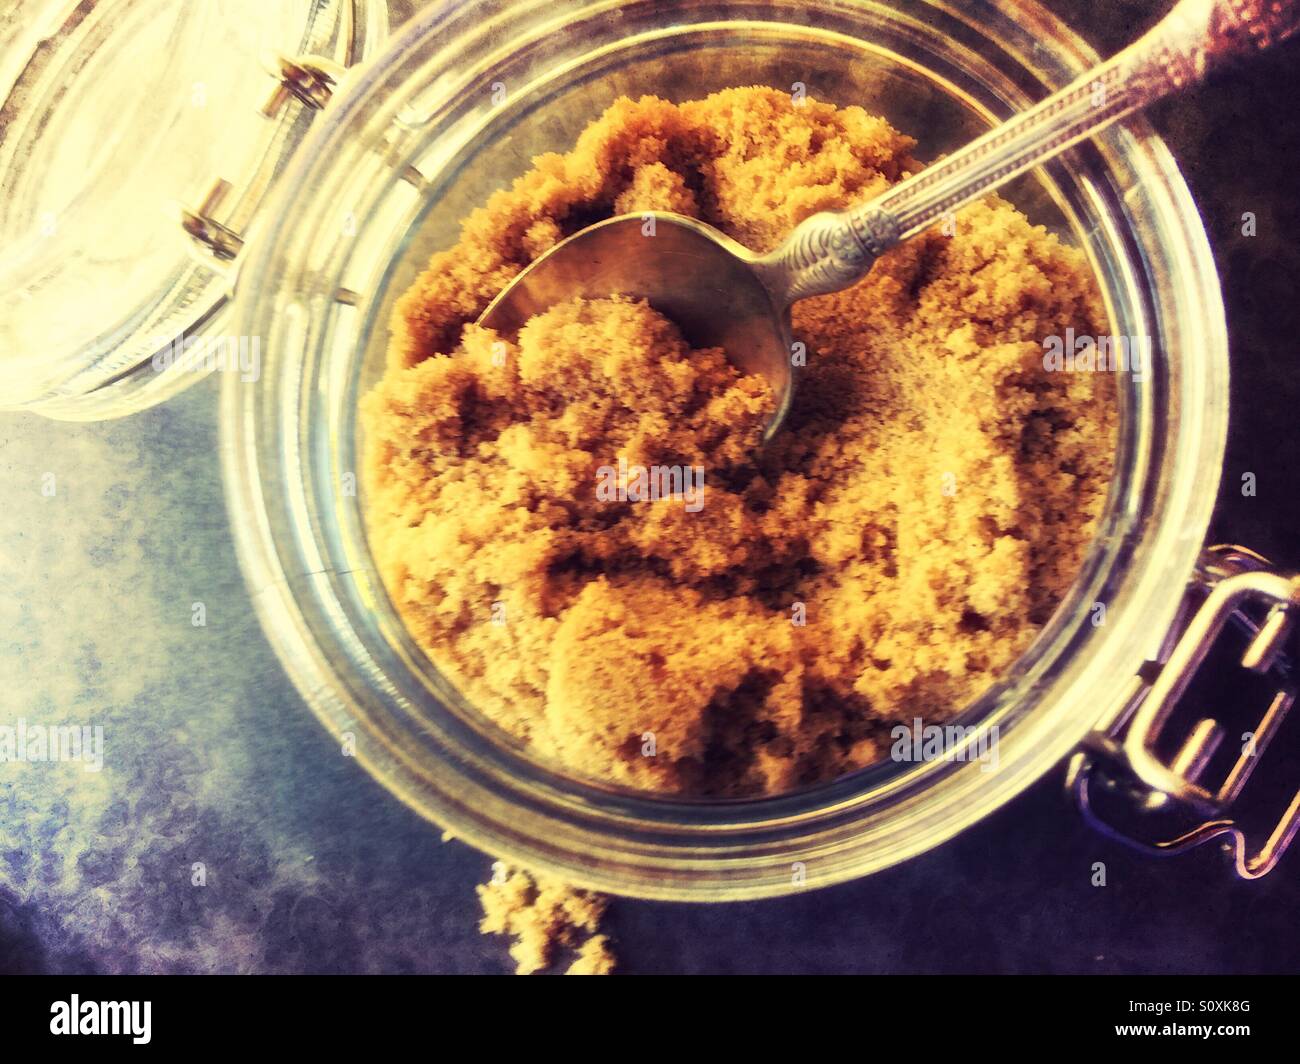 Brown sugar en un tarro de vidrio Foto de stock